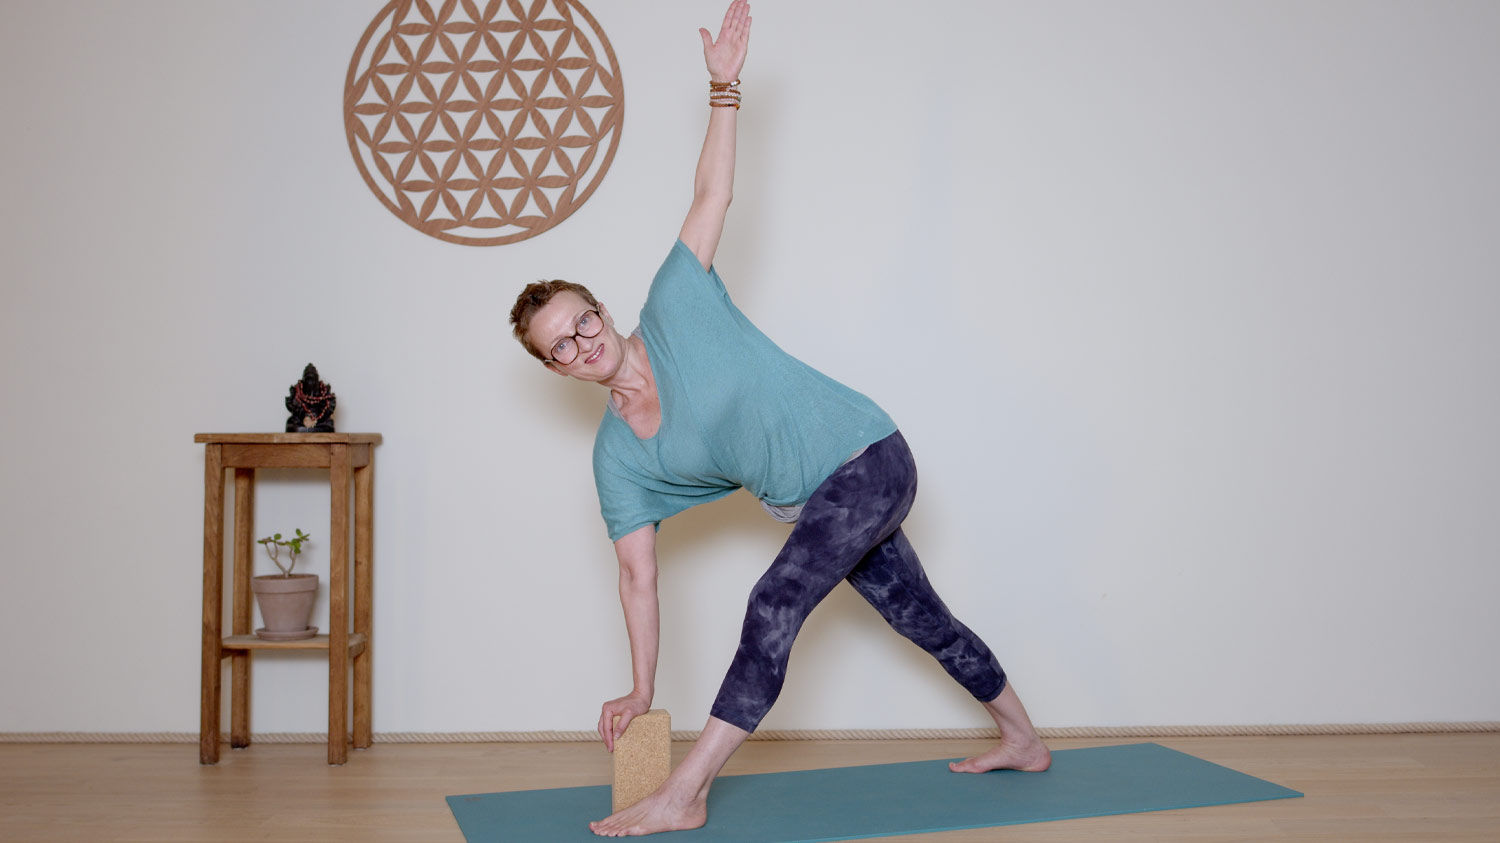 Replay du mercredi 13 septembre | Cours de yoga en ligne avec Delphine Denis | Hatha Yoga dynamique, Méditation, Pranayama